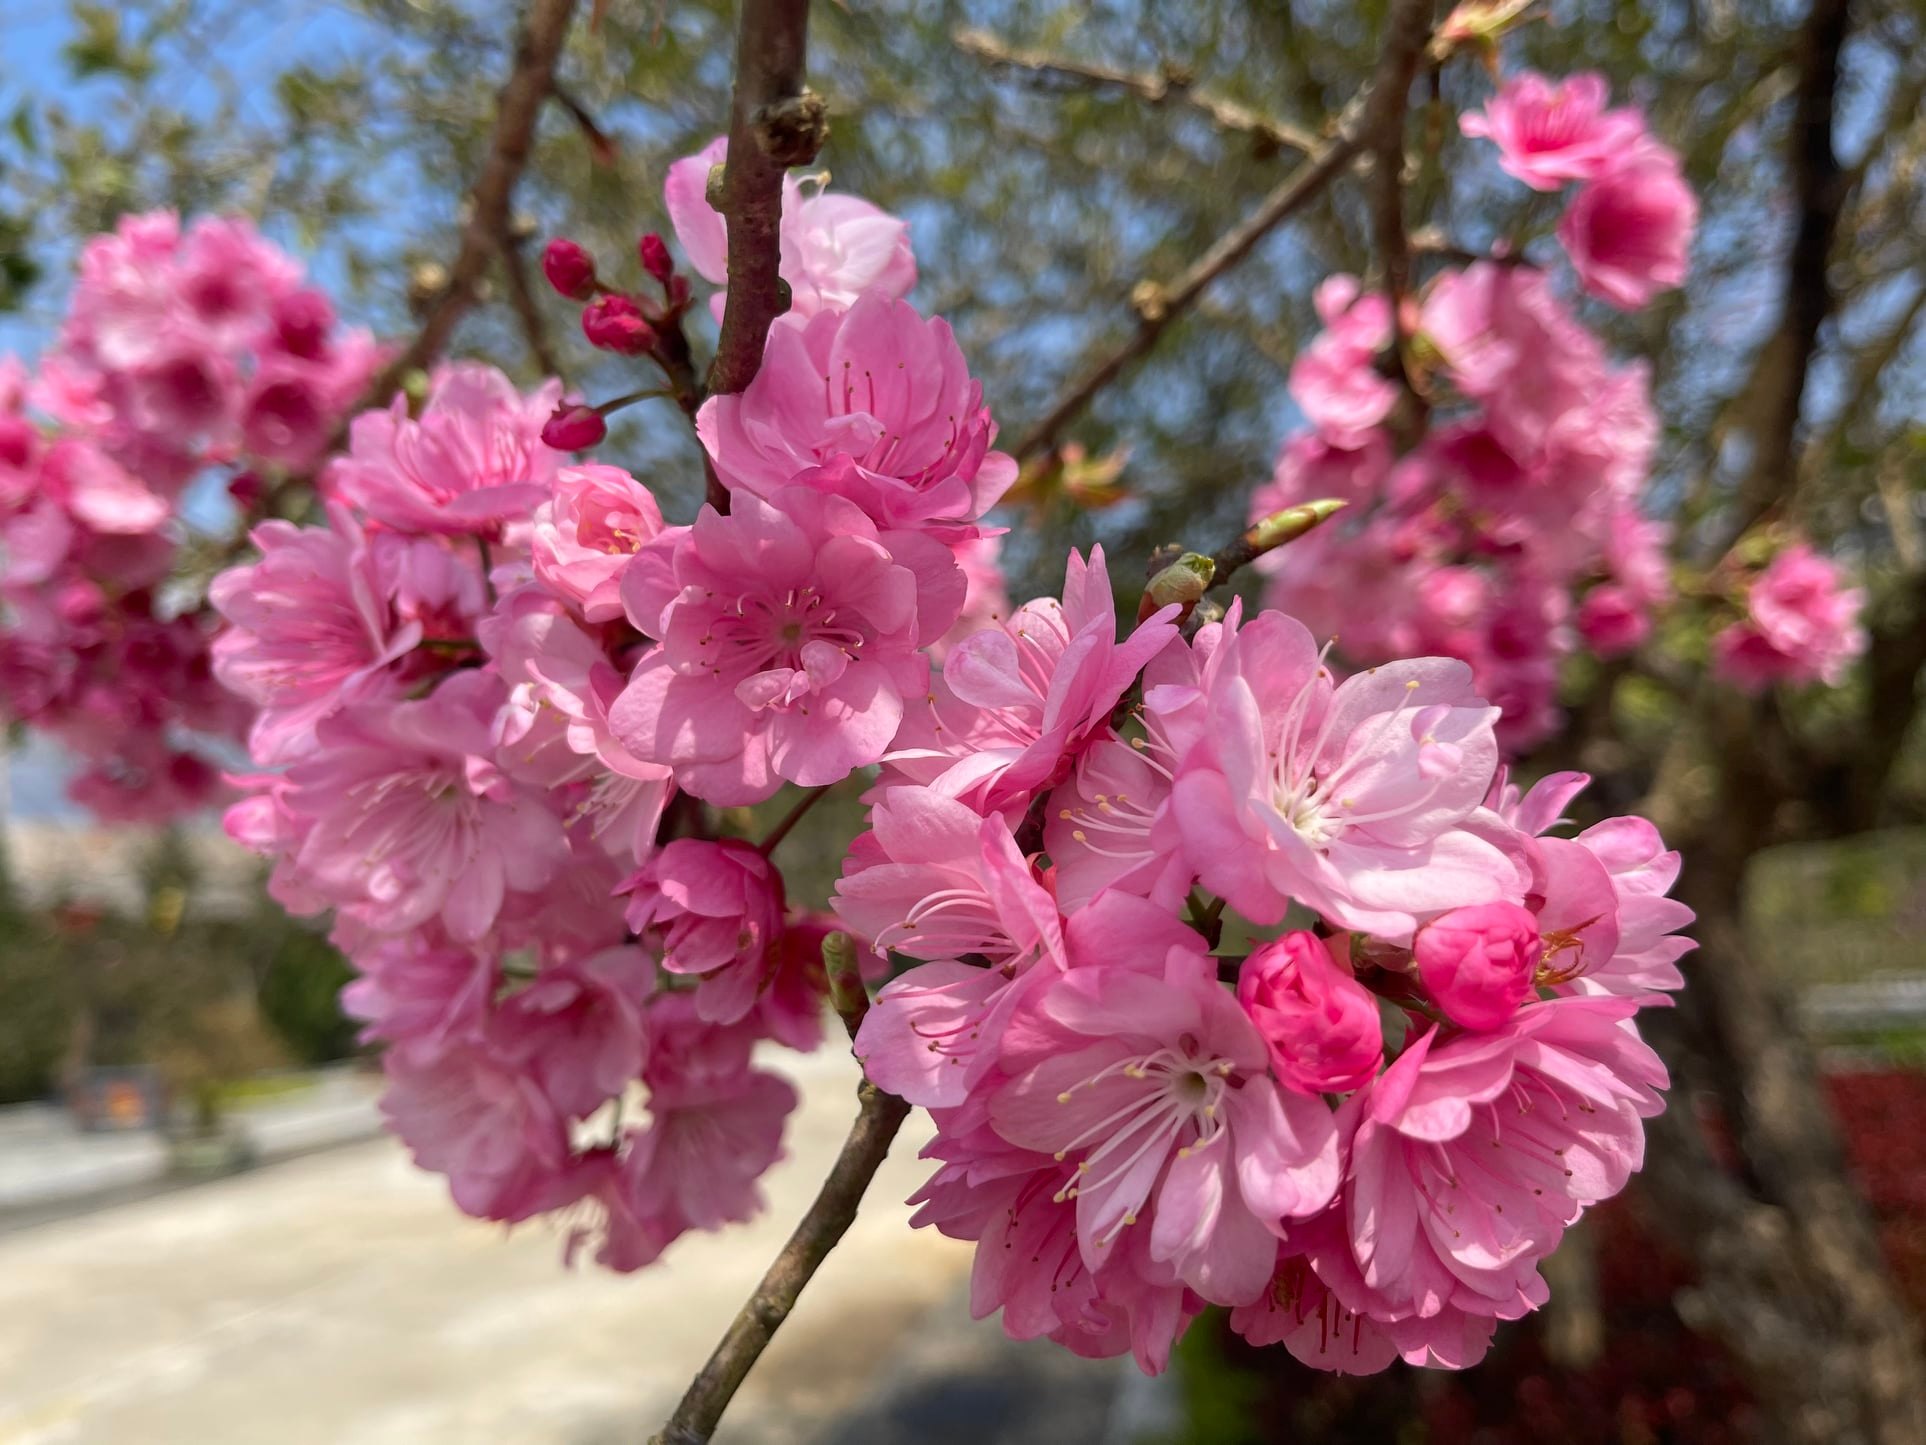 Sapa Cherry blossom